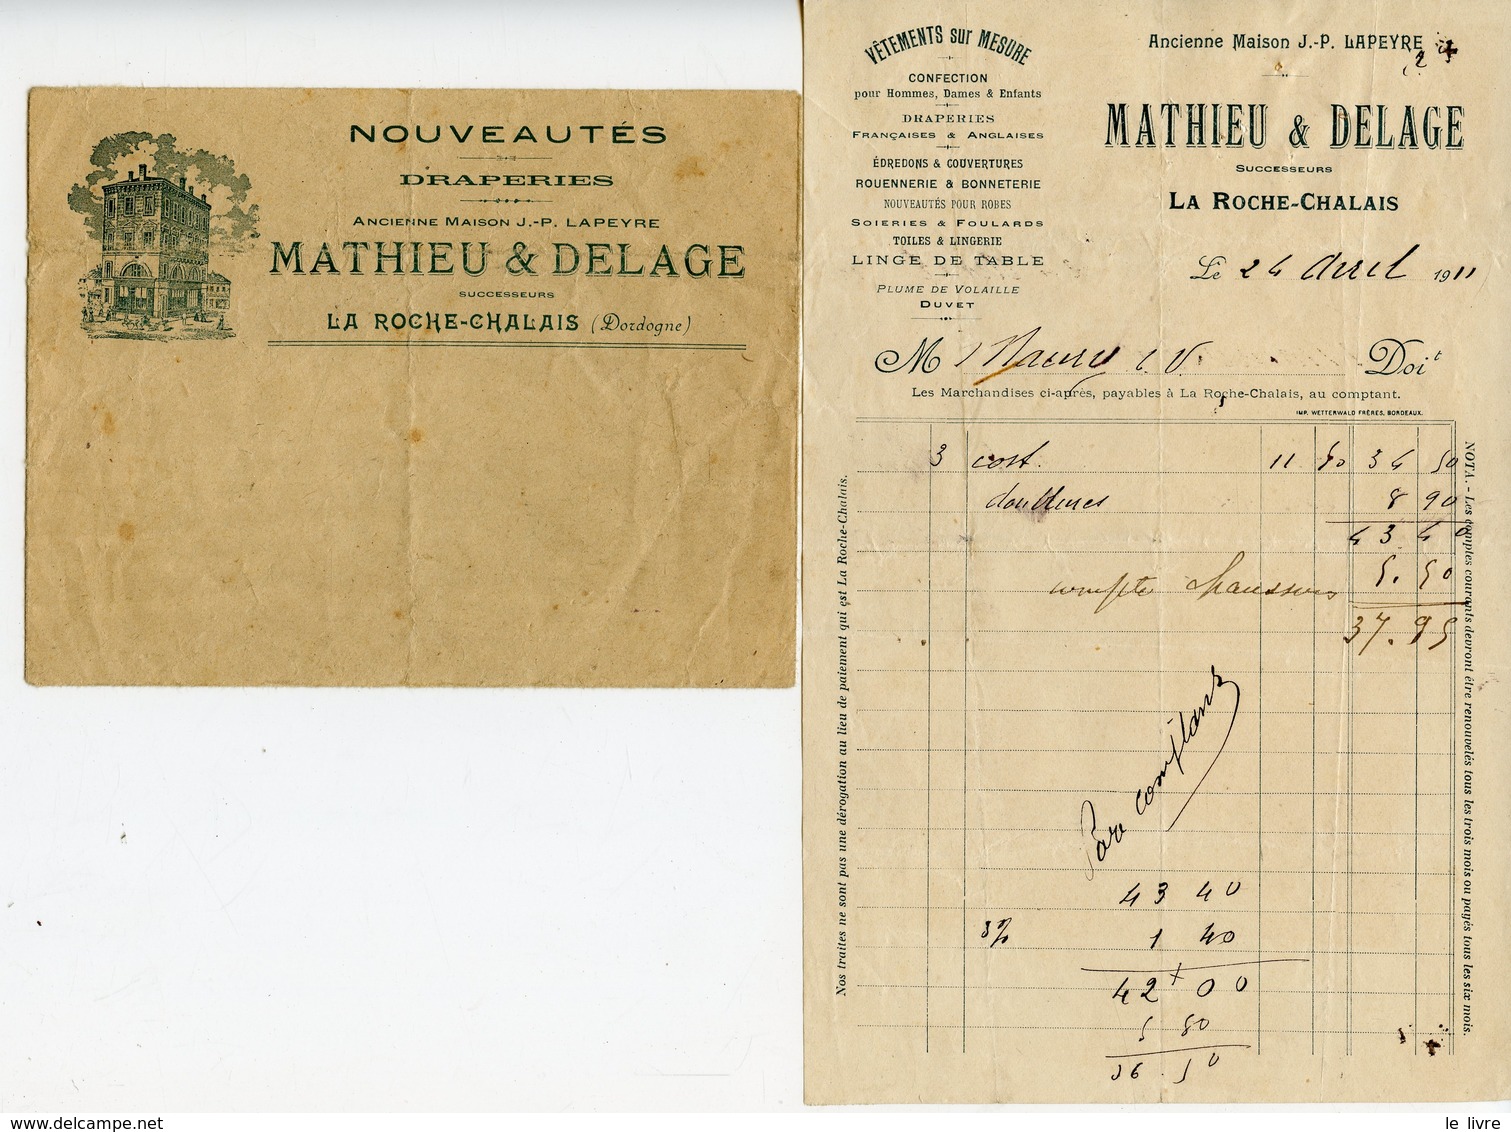 LA ROCHE-CHALAIS 24. PETITE FACTURE AVEC ENVELOPPE MATHIEU & DELAGE DRAPERIES NOUVEAUTES 1911